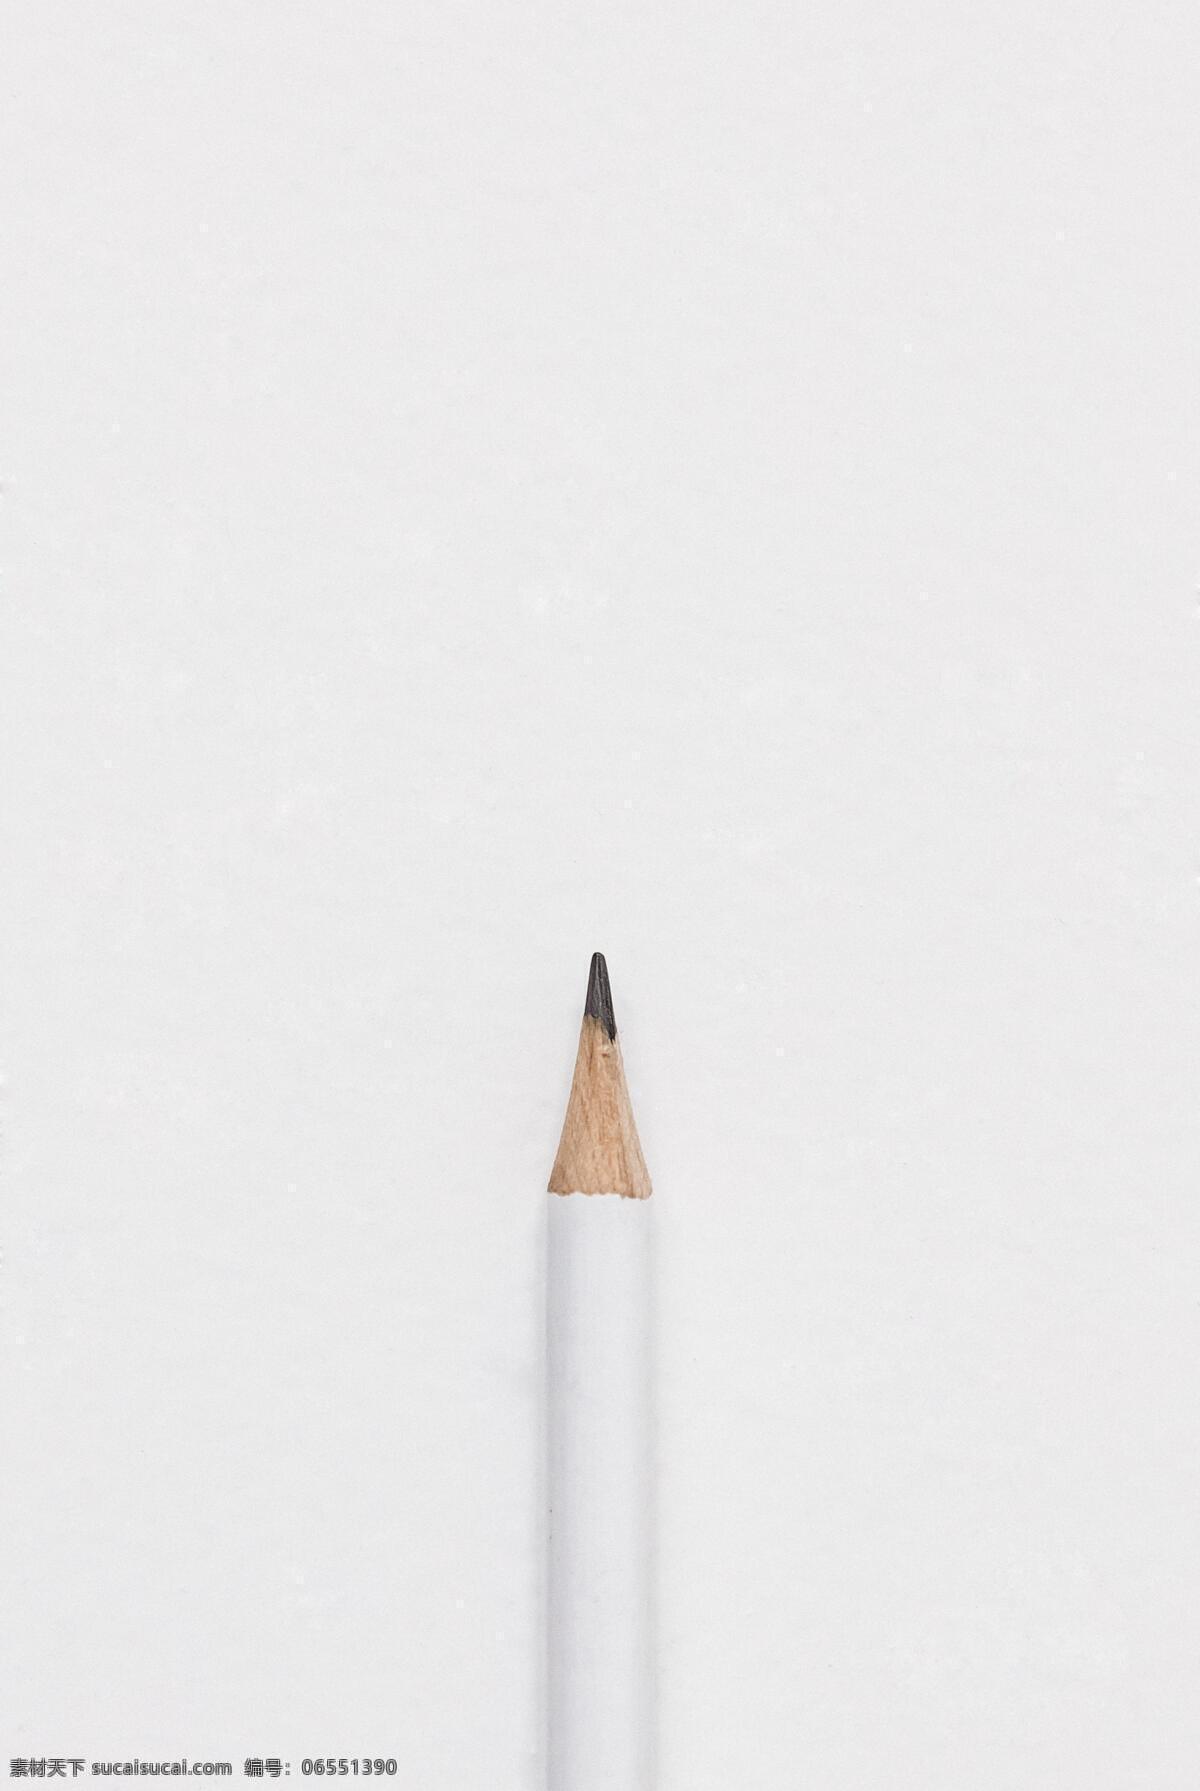 白色 背景 上 铅笔 白色铅笔 白色背景 背景墙 白底 简约背景 削好的铅笔 图库物品场景 生活百科 学习办公